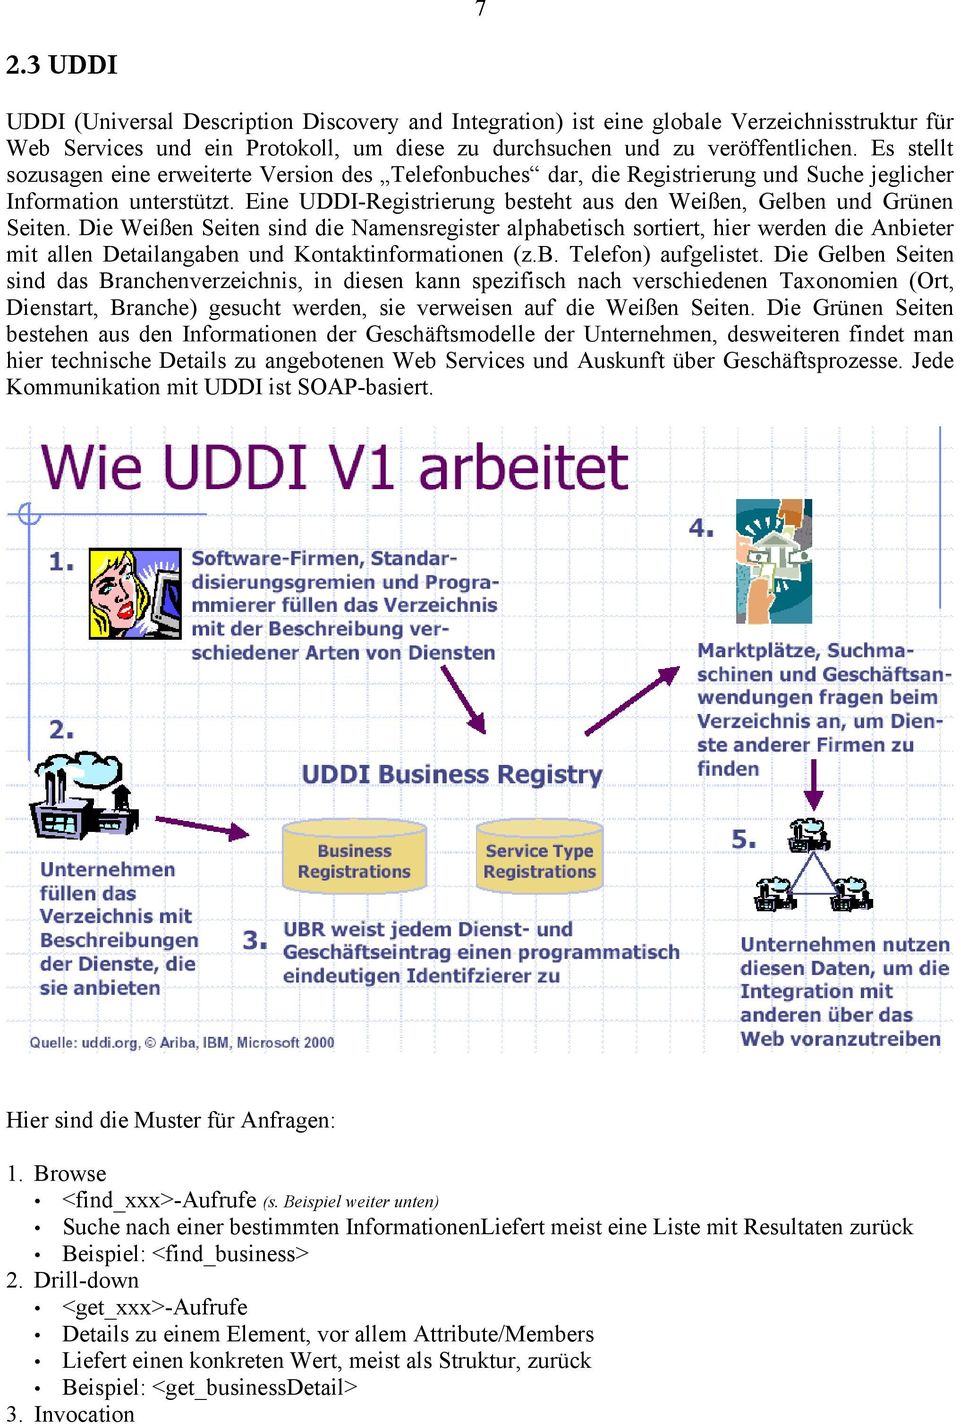 Eine UDDI-Registrierung besteht aus den Weißen, Gelben und Grünen Seiten.